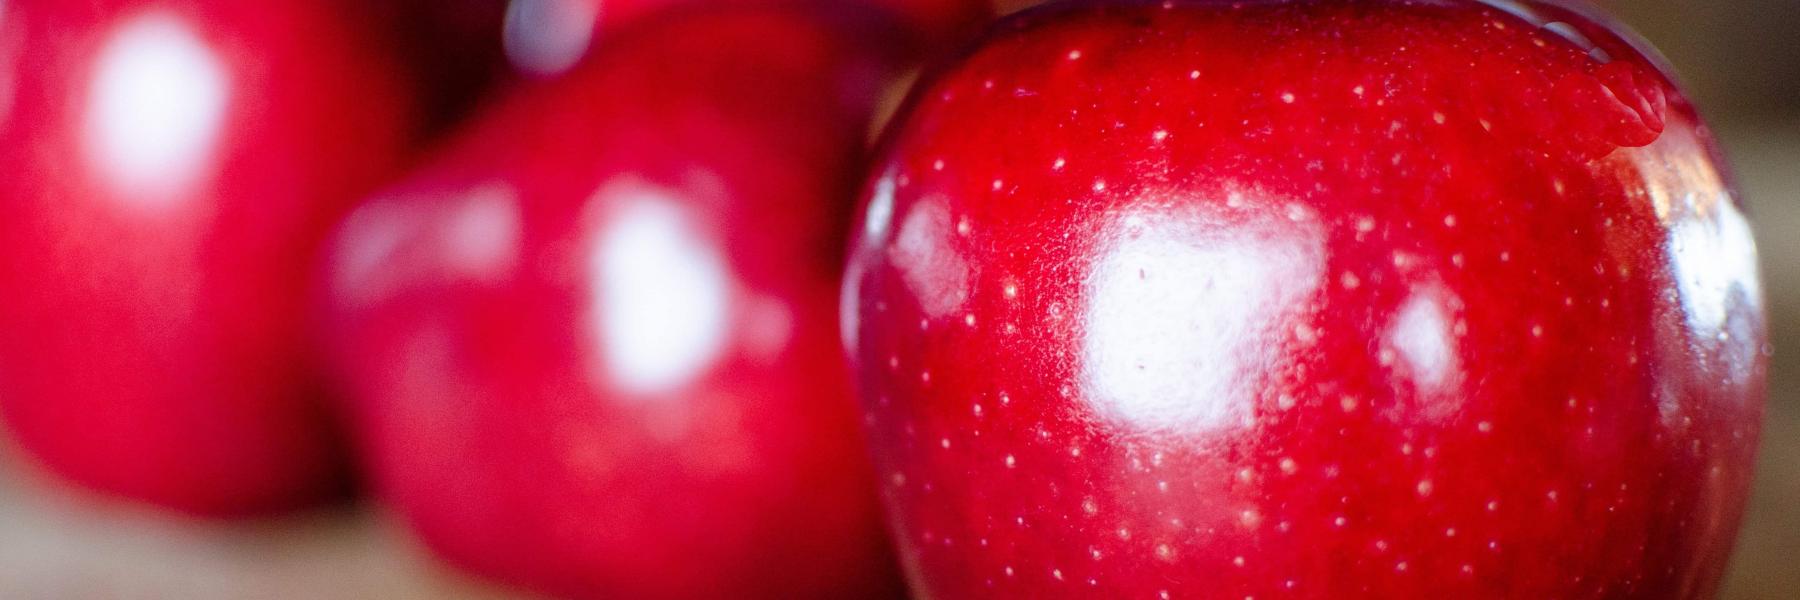 هل يجب تناول التفاح الأحمر مع القشور؟